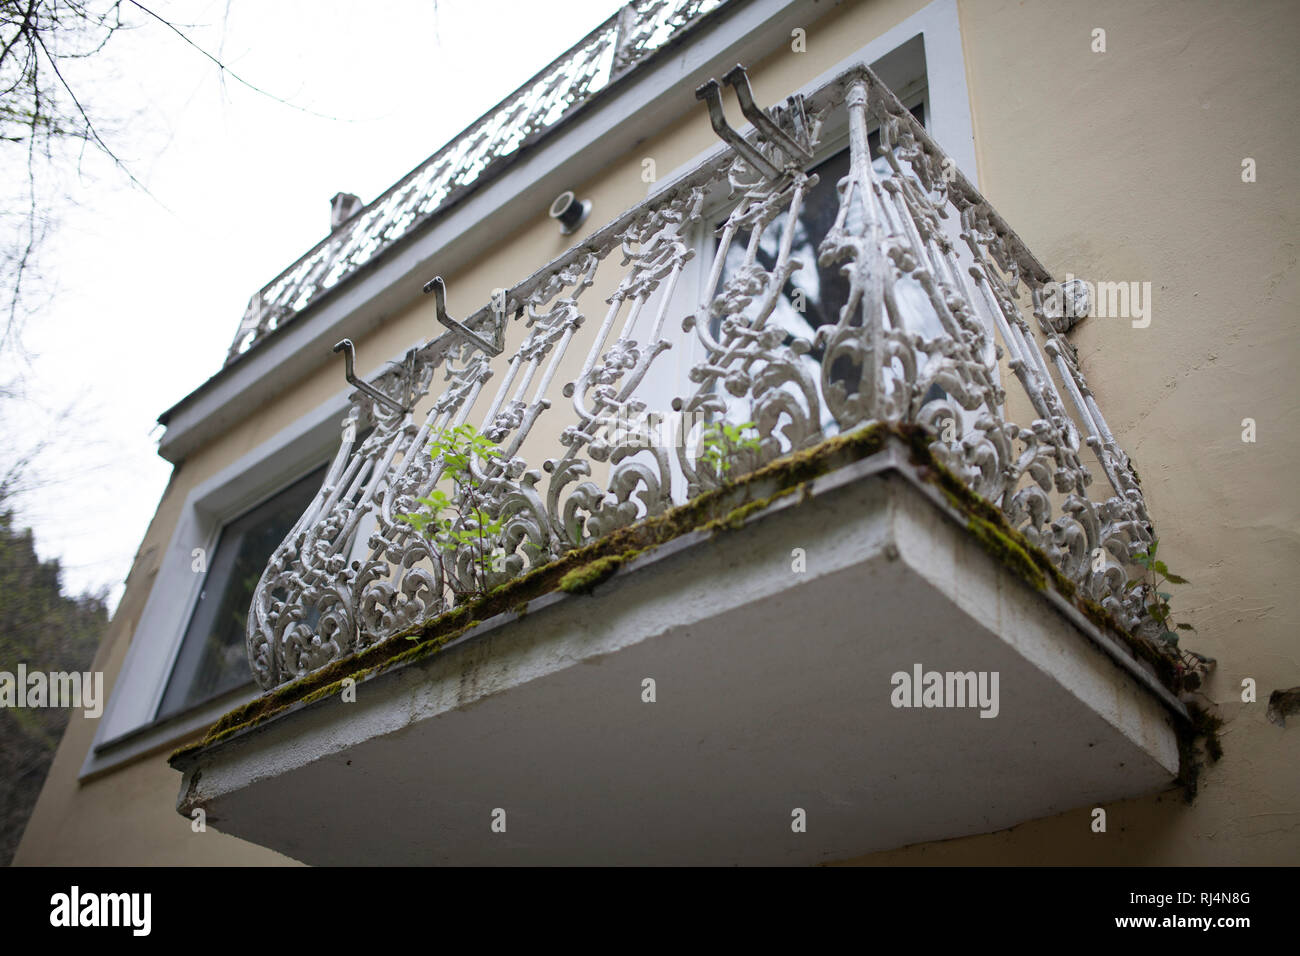 Der Verfall Bad Gasteins - ehemaliges Hotel - bewachsener Balkon Stock Photo